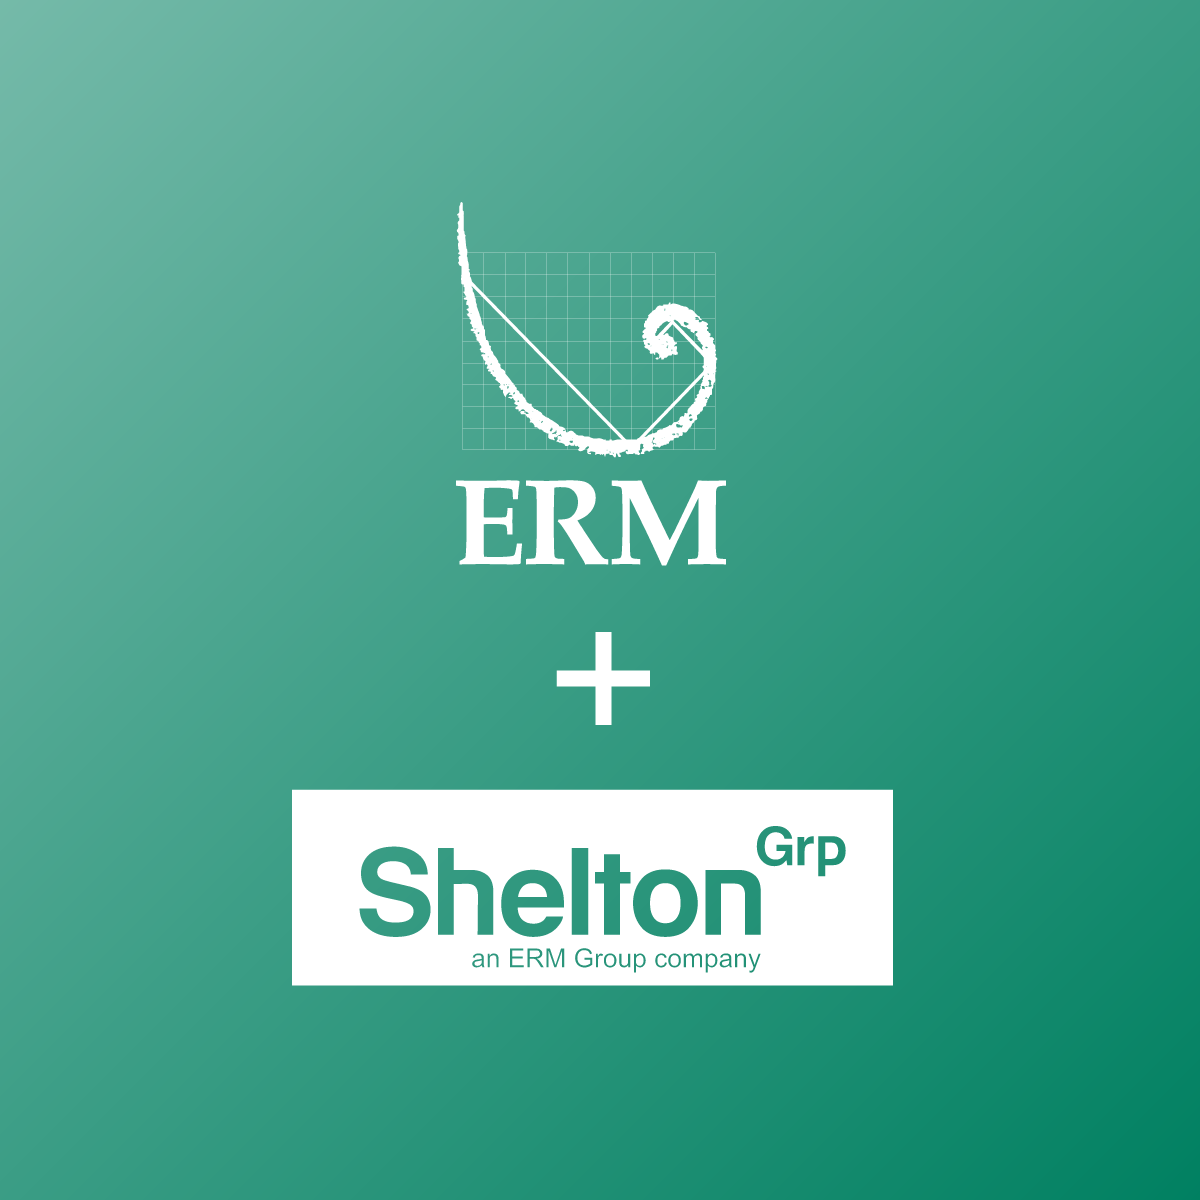 Shelton group ERM Group